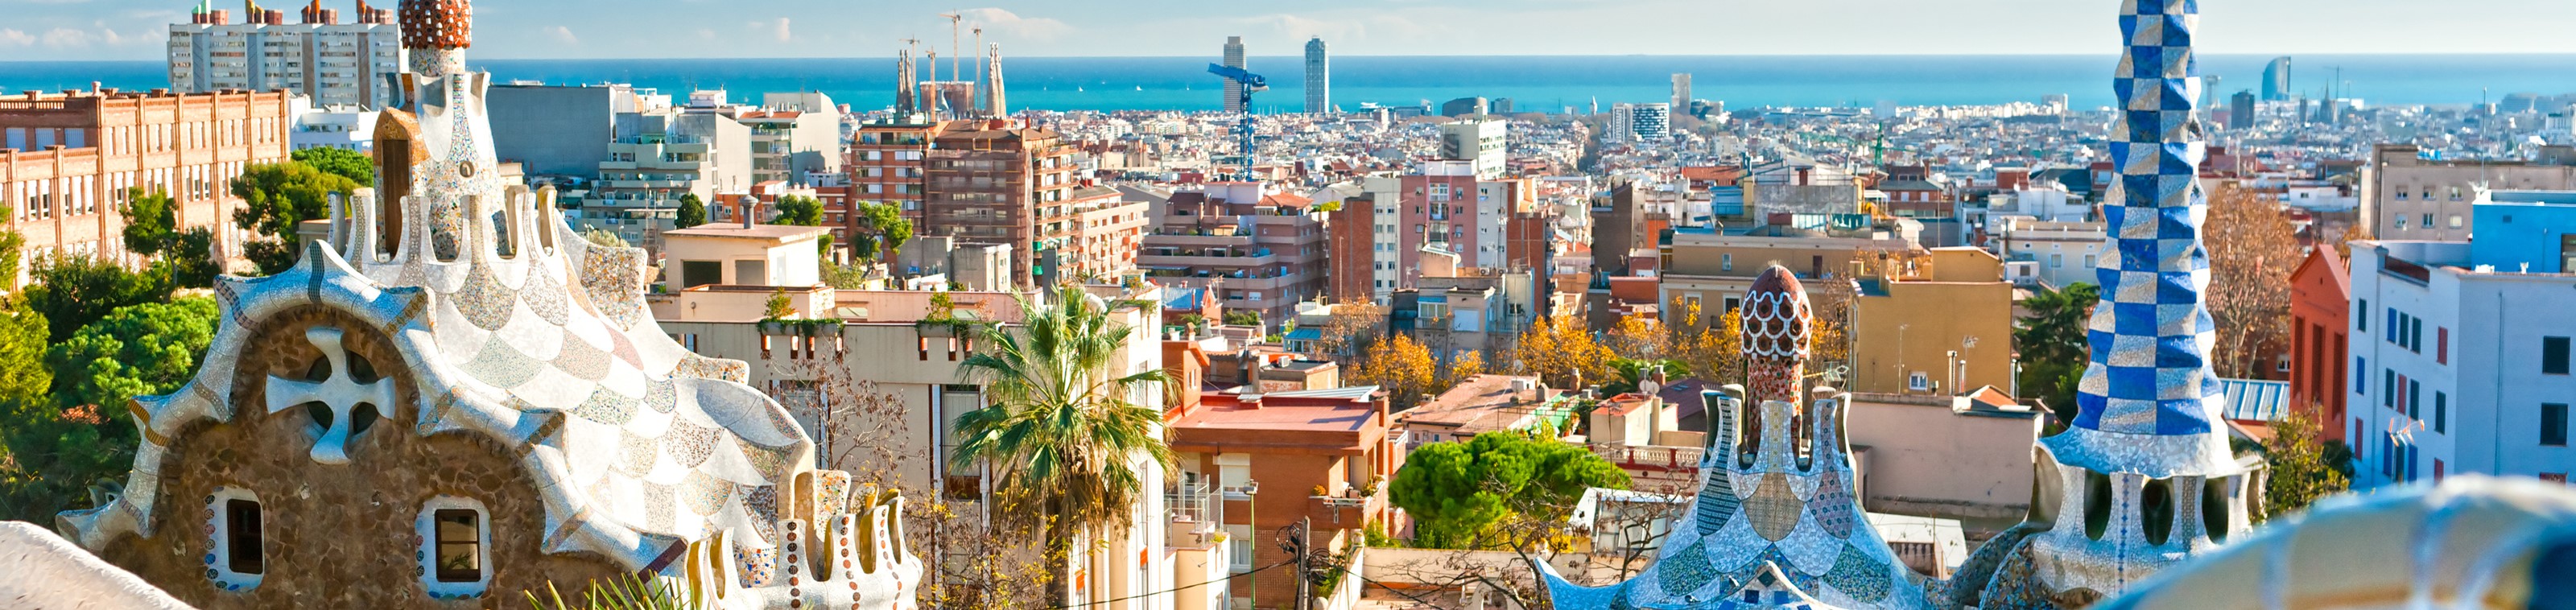 Citytrip de 4 jours à Barcelone au mois de juin